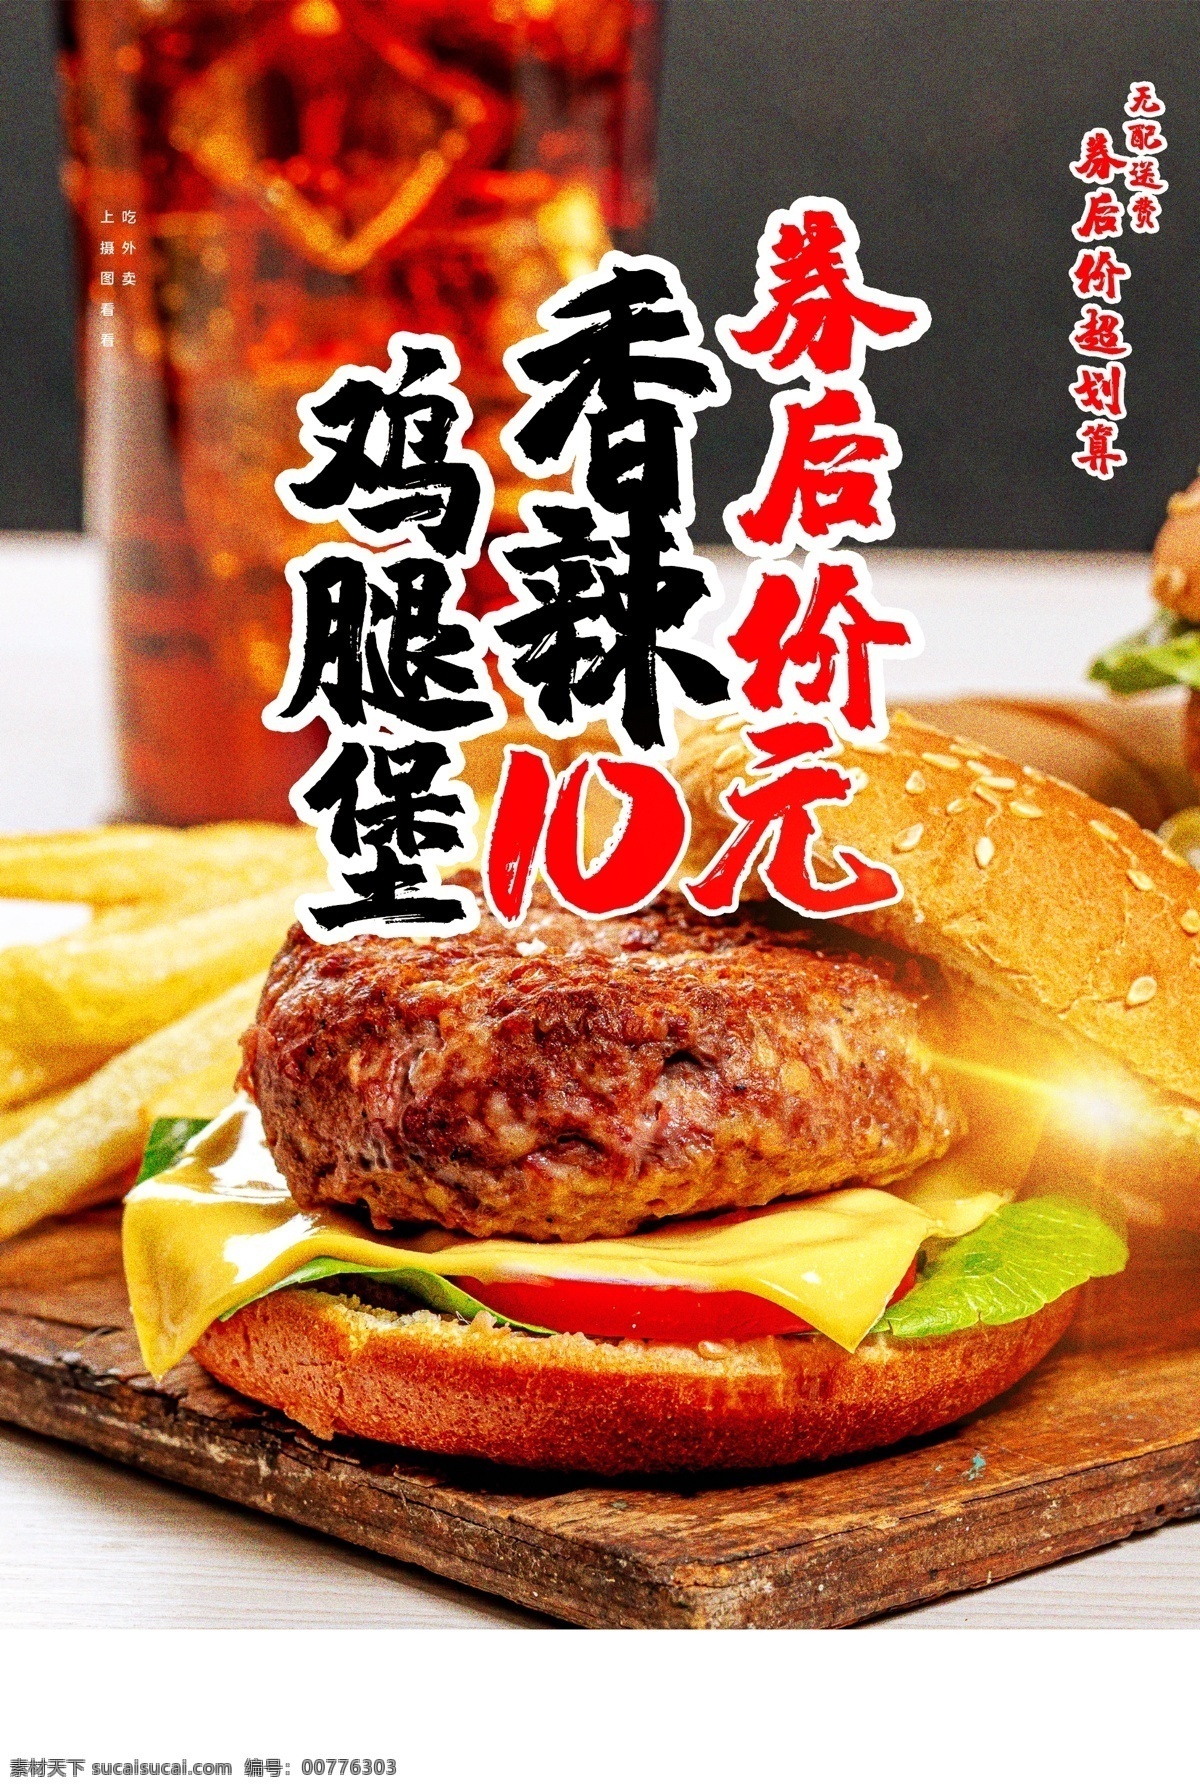 鸡腿 堡 美食 食 材 宣传海报 鸡腿堡 食材 宣传 海报 餐饮美食 类